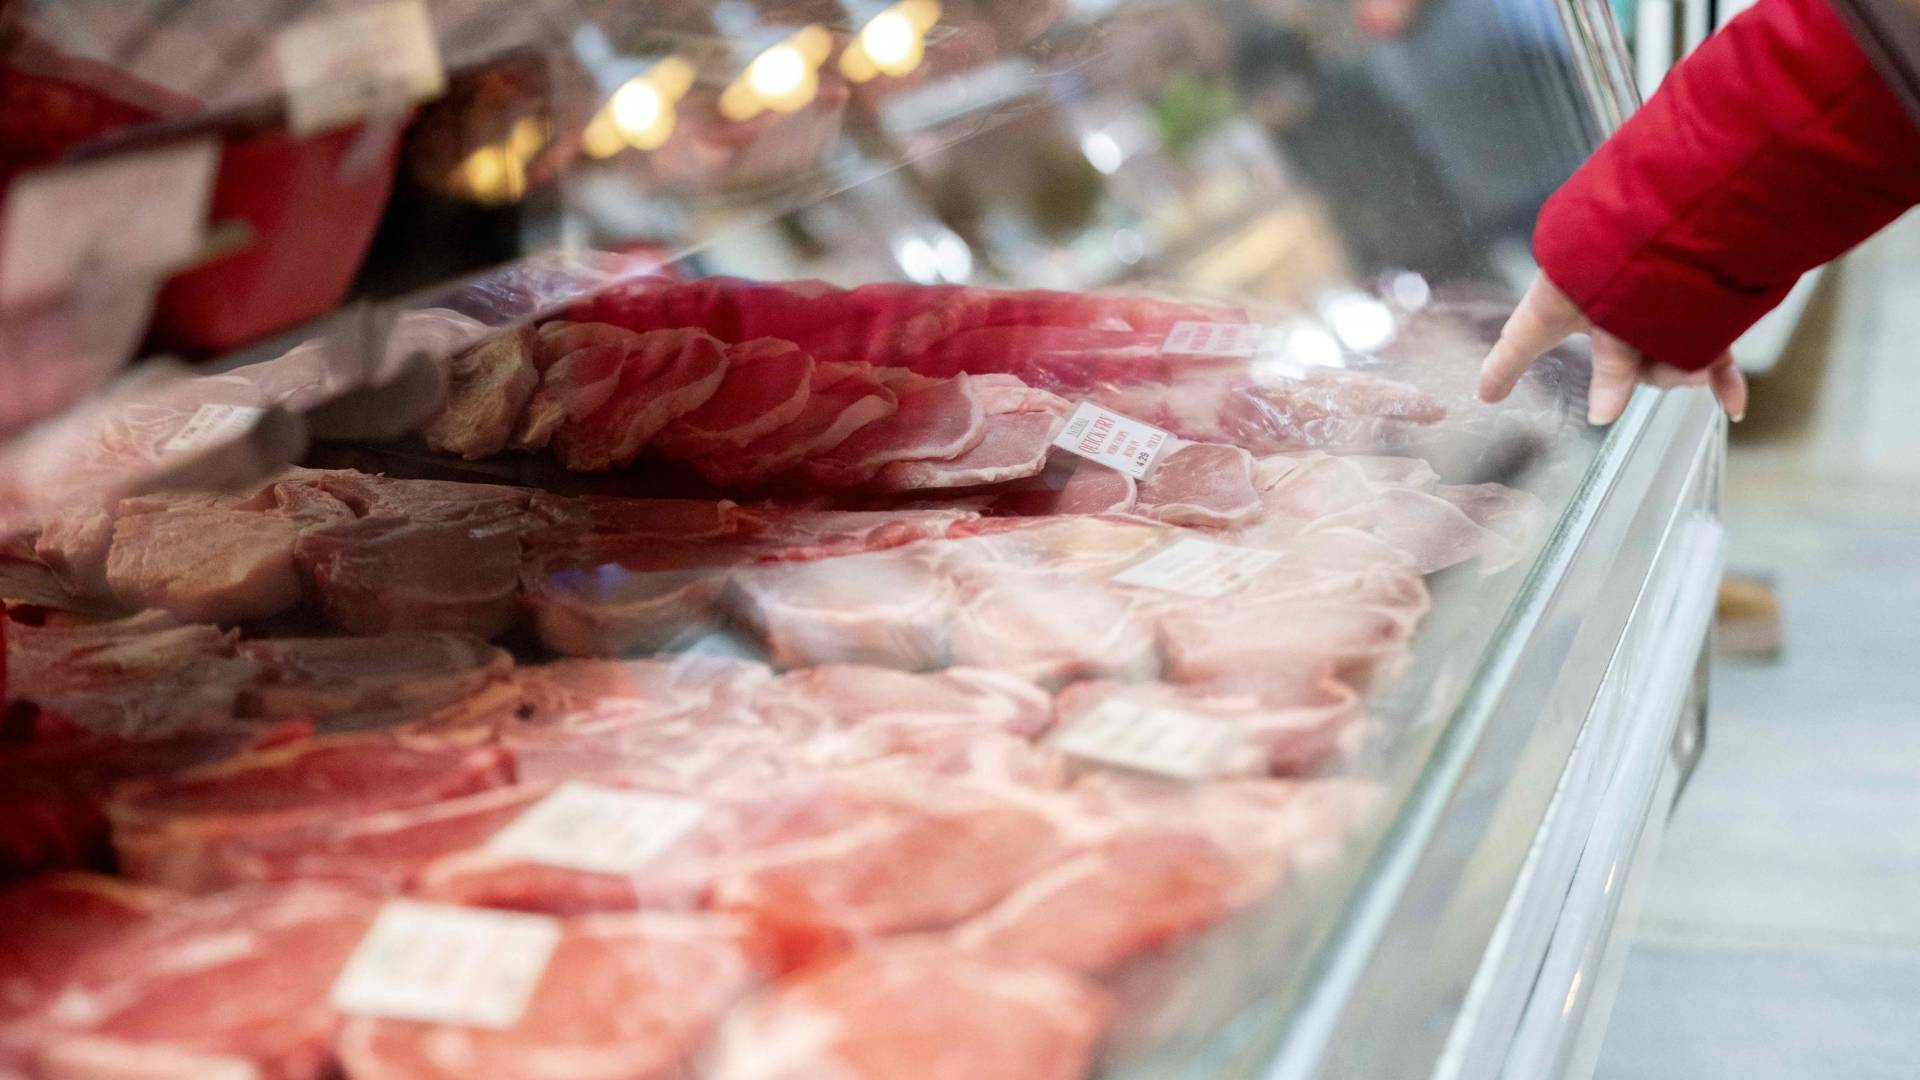 يدرس مجلس الوزراء الهولندي برفع الضريبة المقررة على اللحوم لأسباب صحية